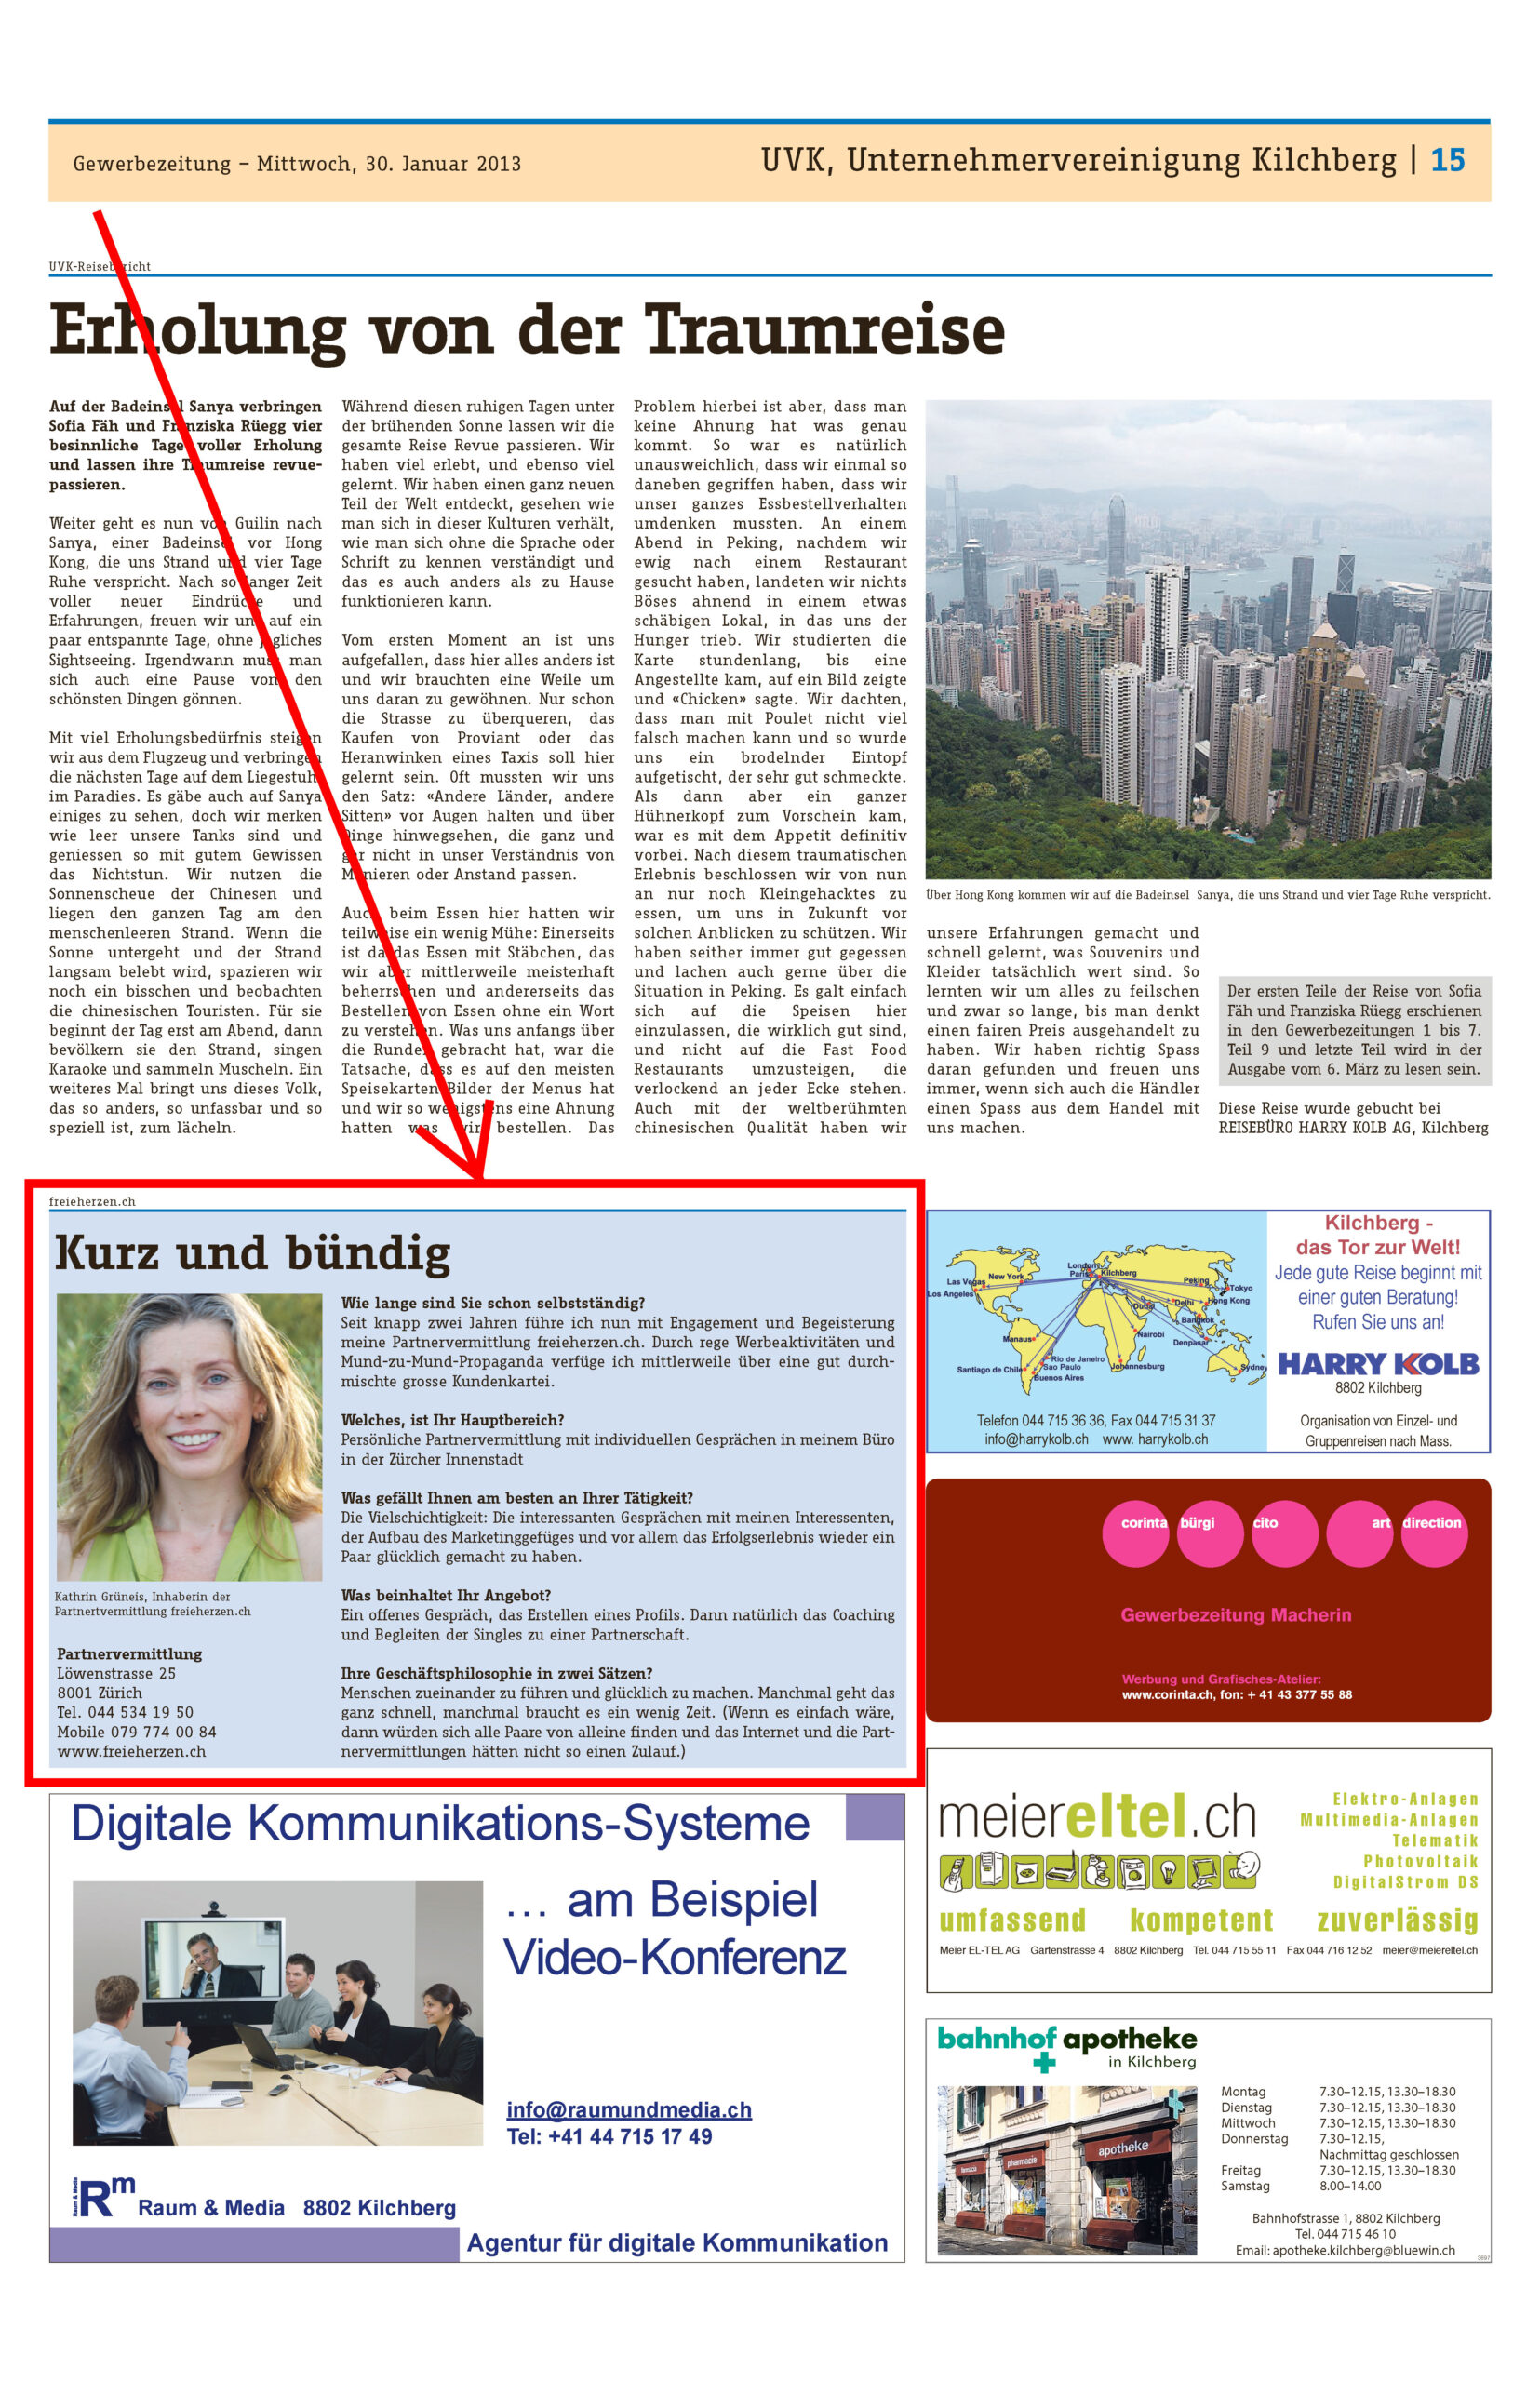 Zeitungsausschnitt von freieherzen.ch in der Gewerbezeitung vom Januar 2013